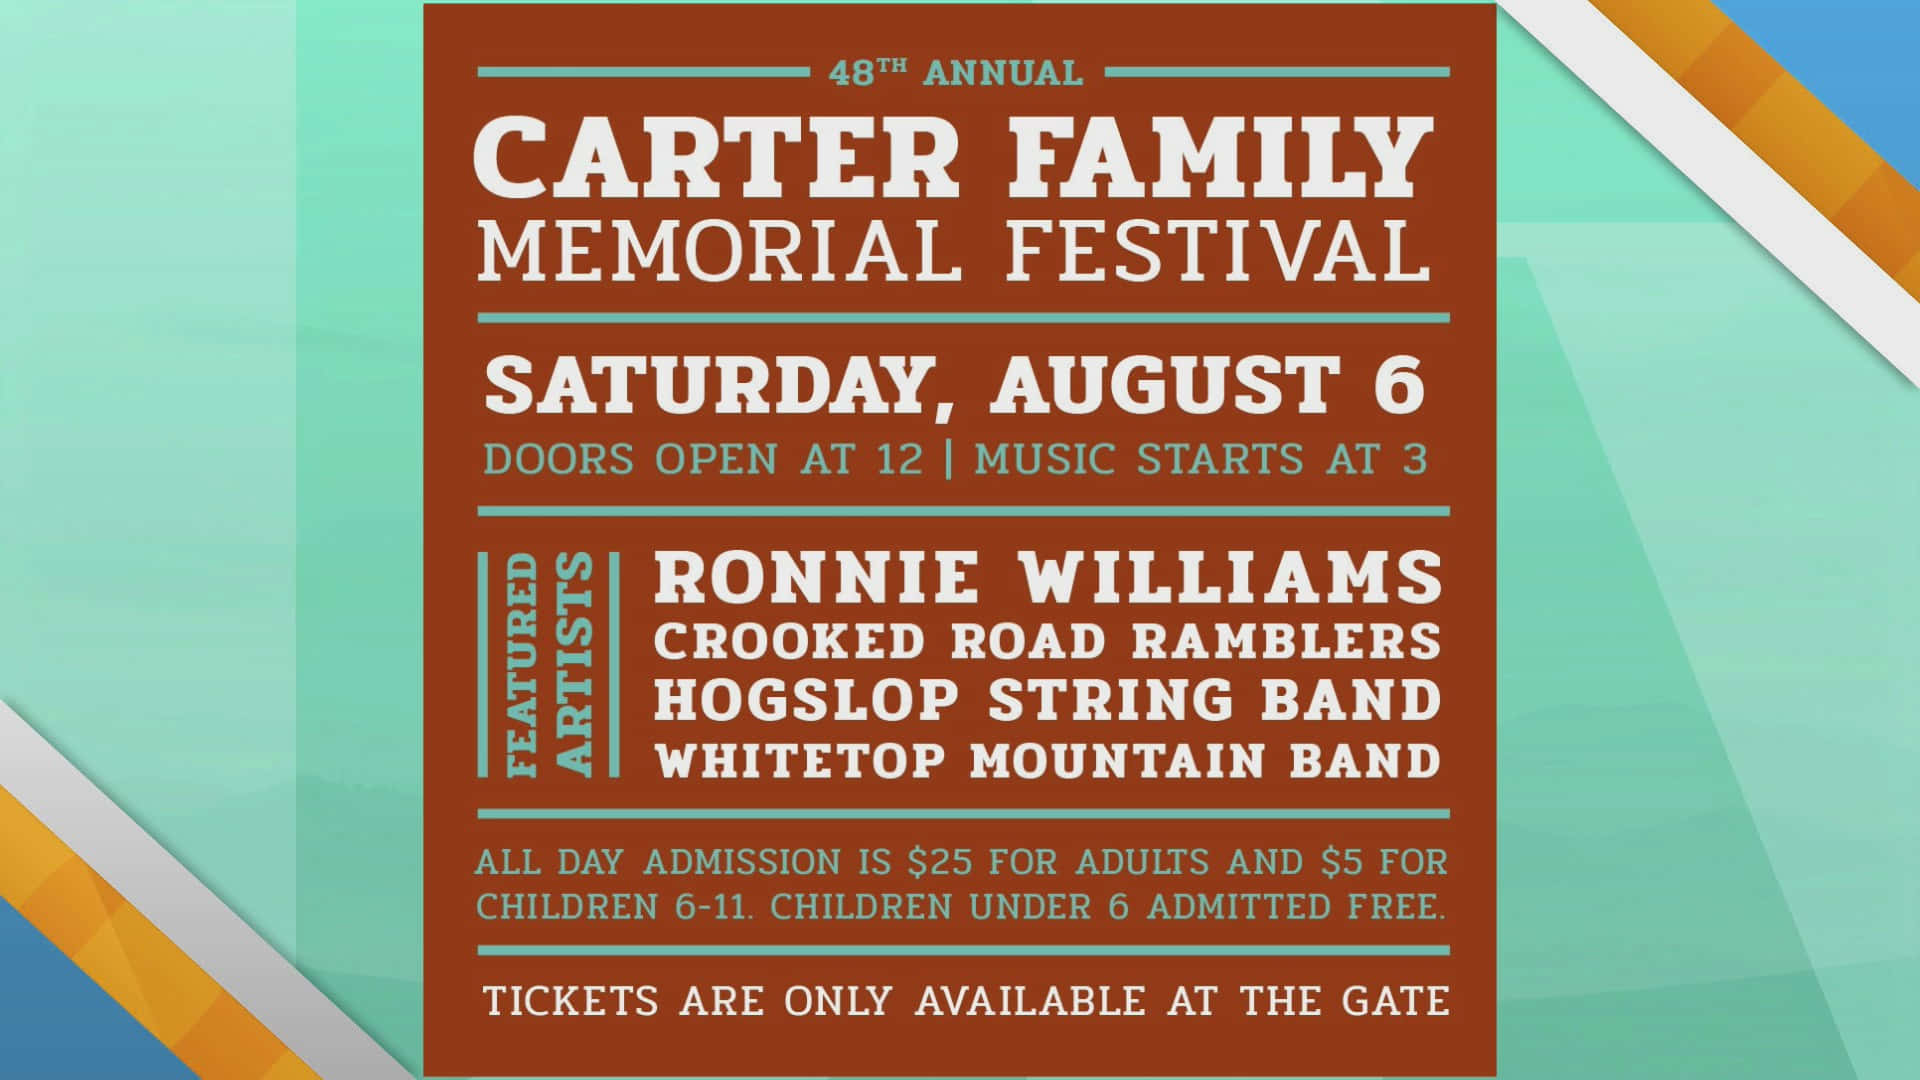 Carter Family Memorial Festival Wallpaper